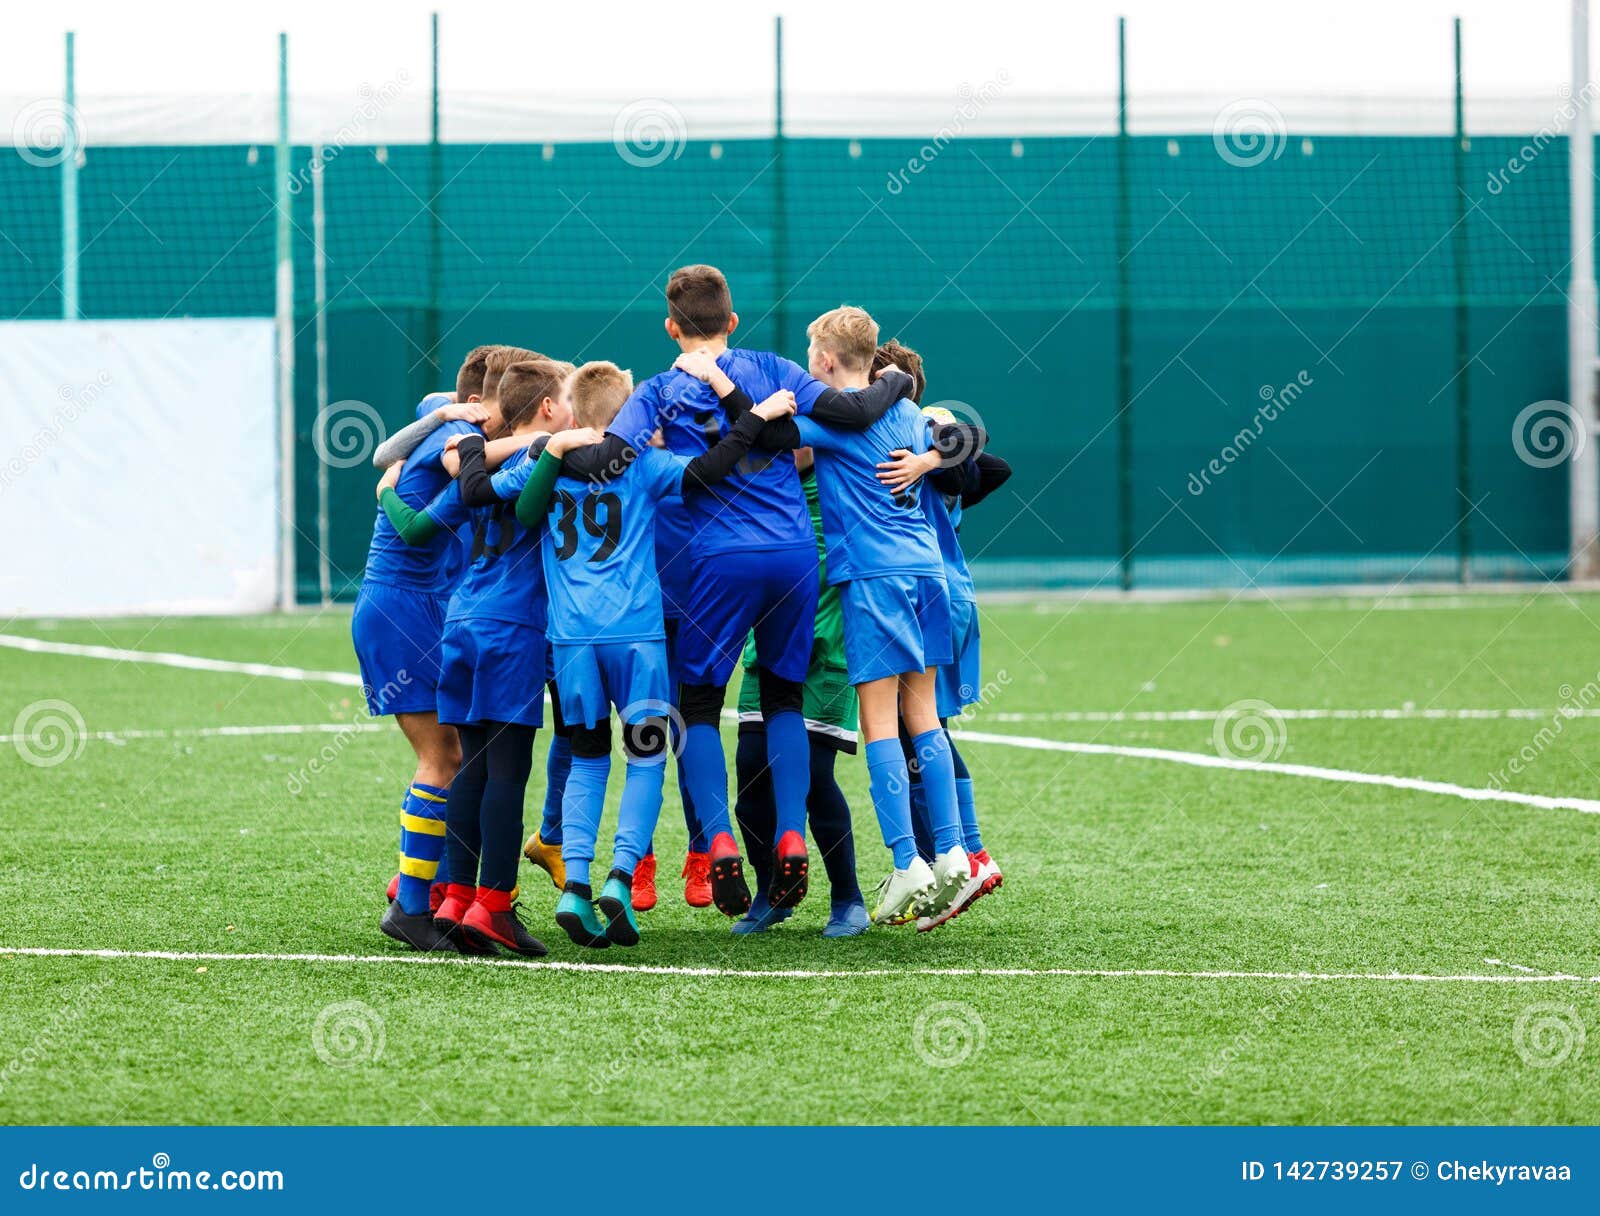 Entrenamiento De Fútbol Para Niños Fotos, retratos, imágenes y fotografía  de archivo libres de derecho. Image 55917457